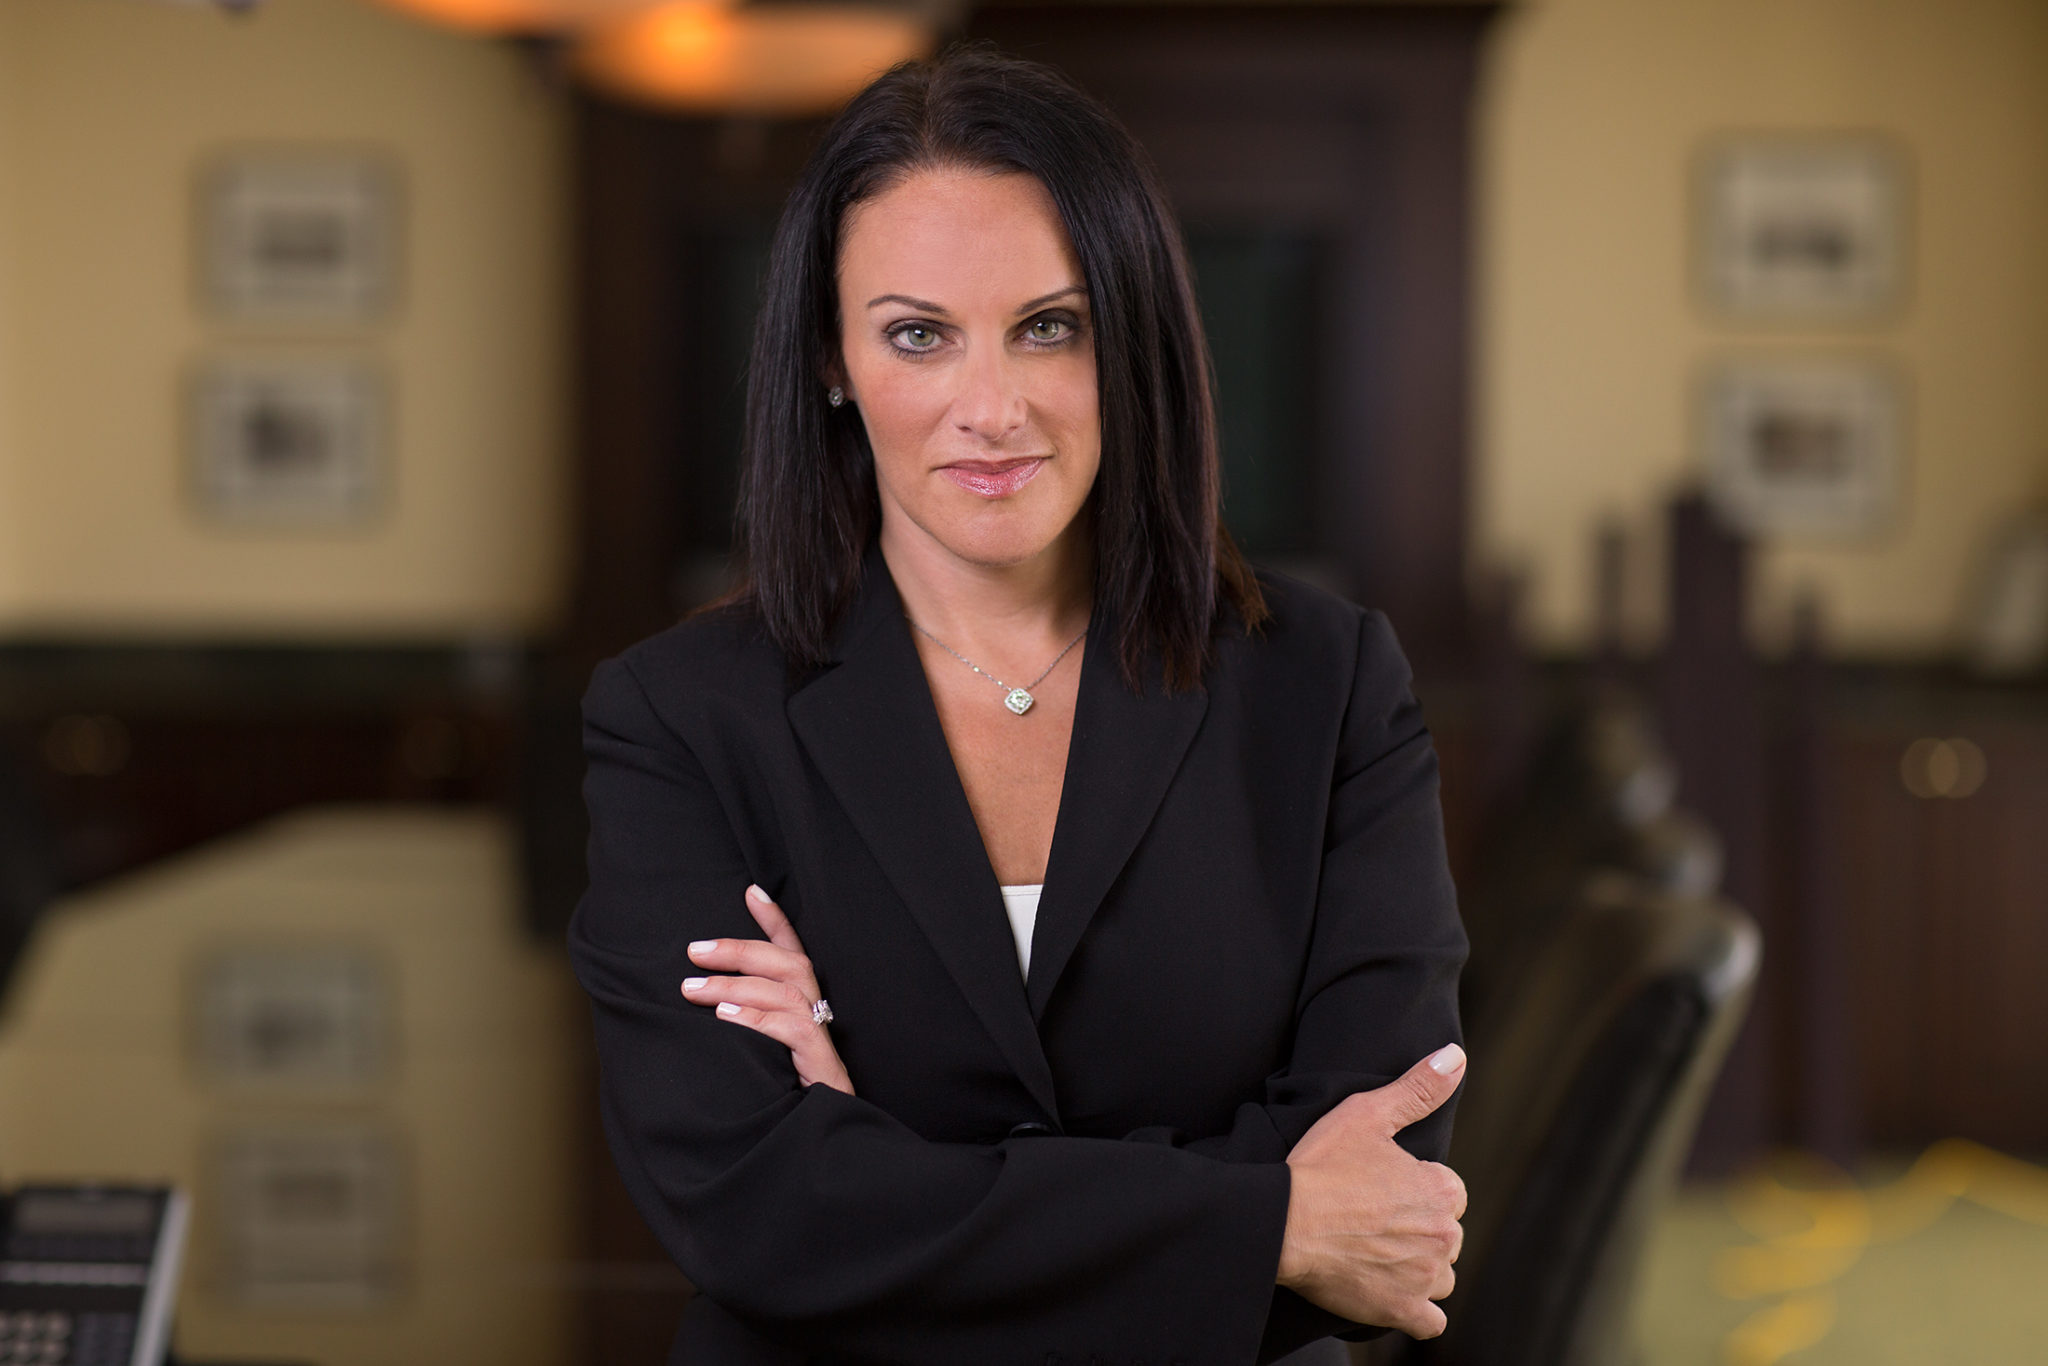 Gunster attorney Elaine Bucher